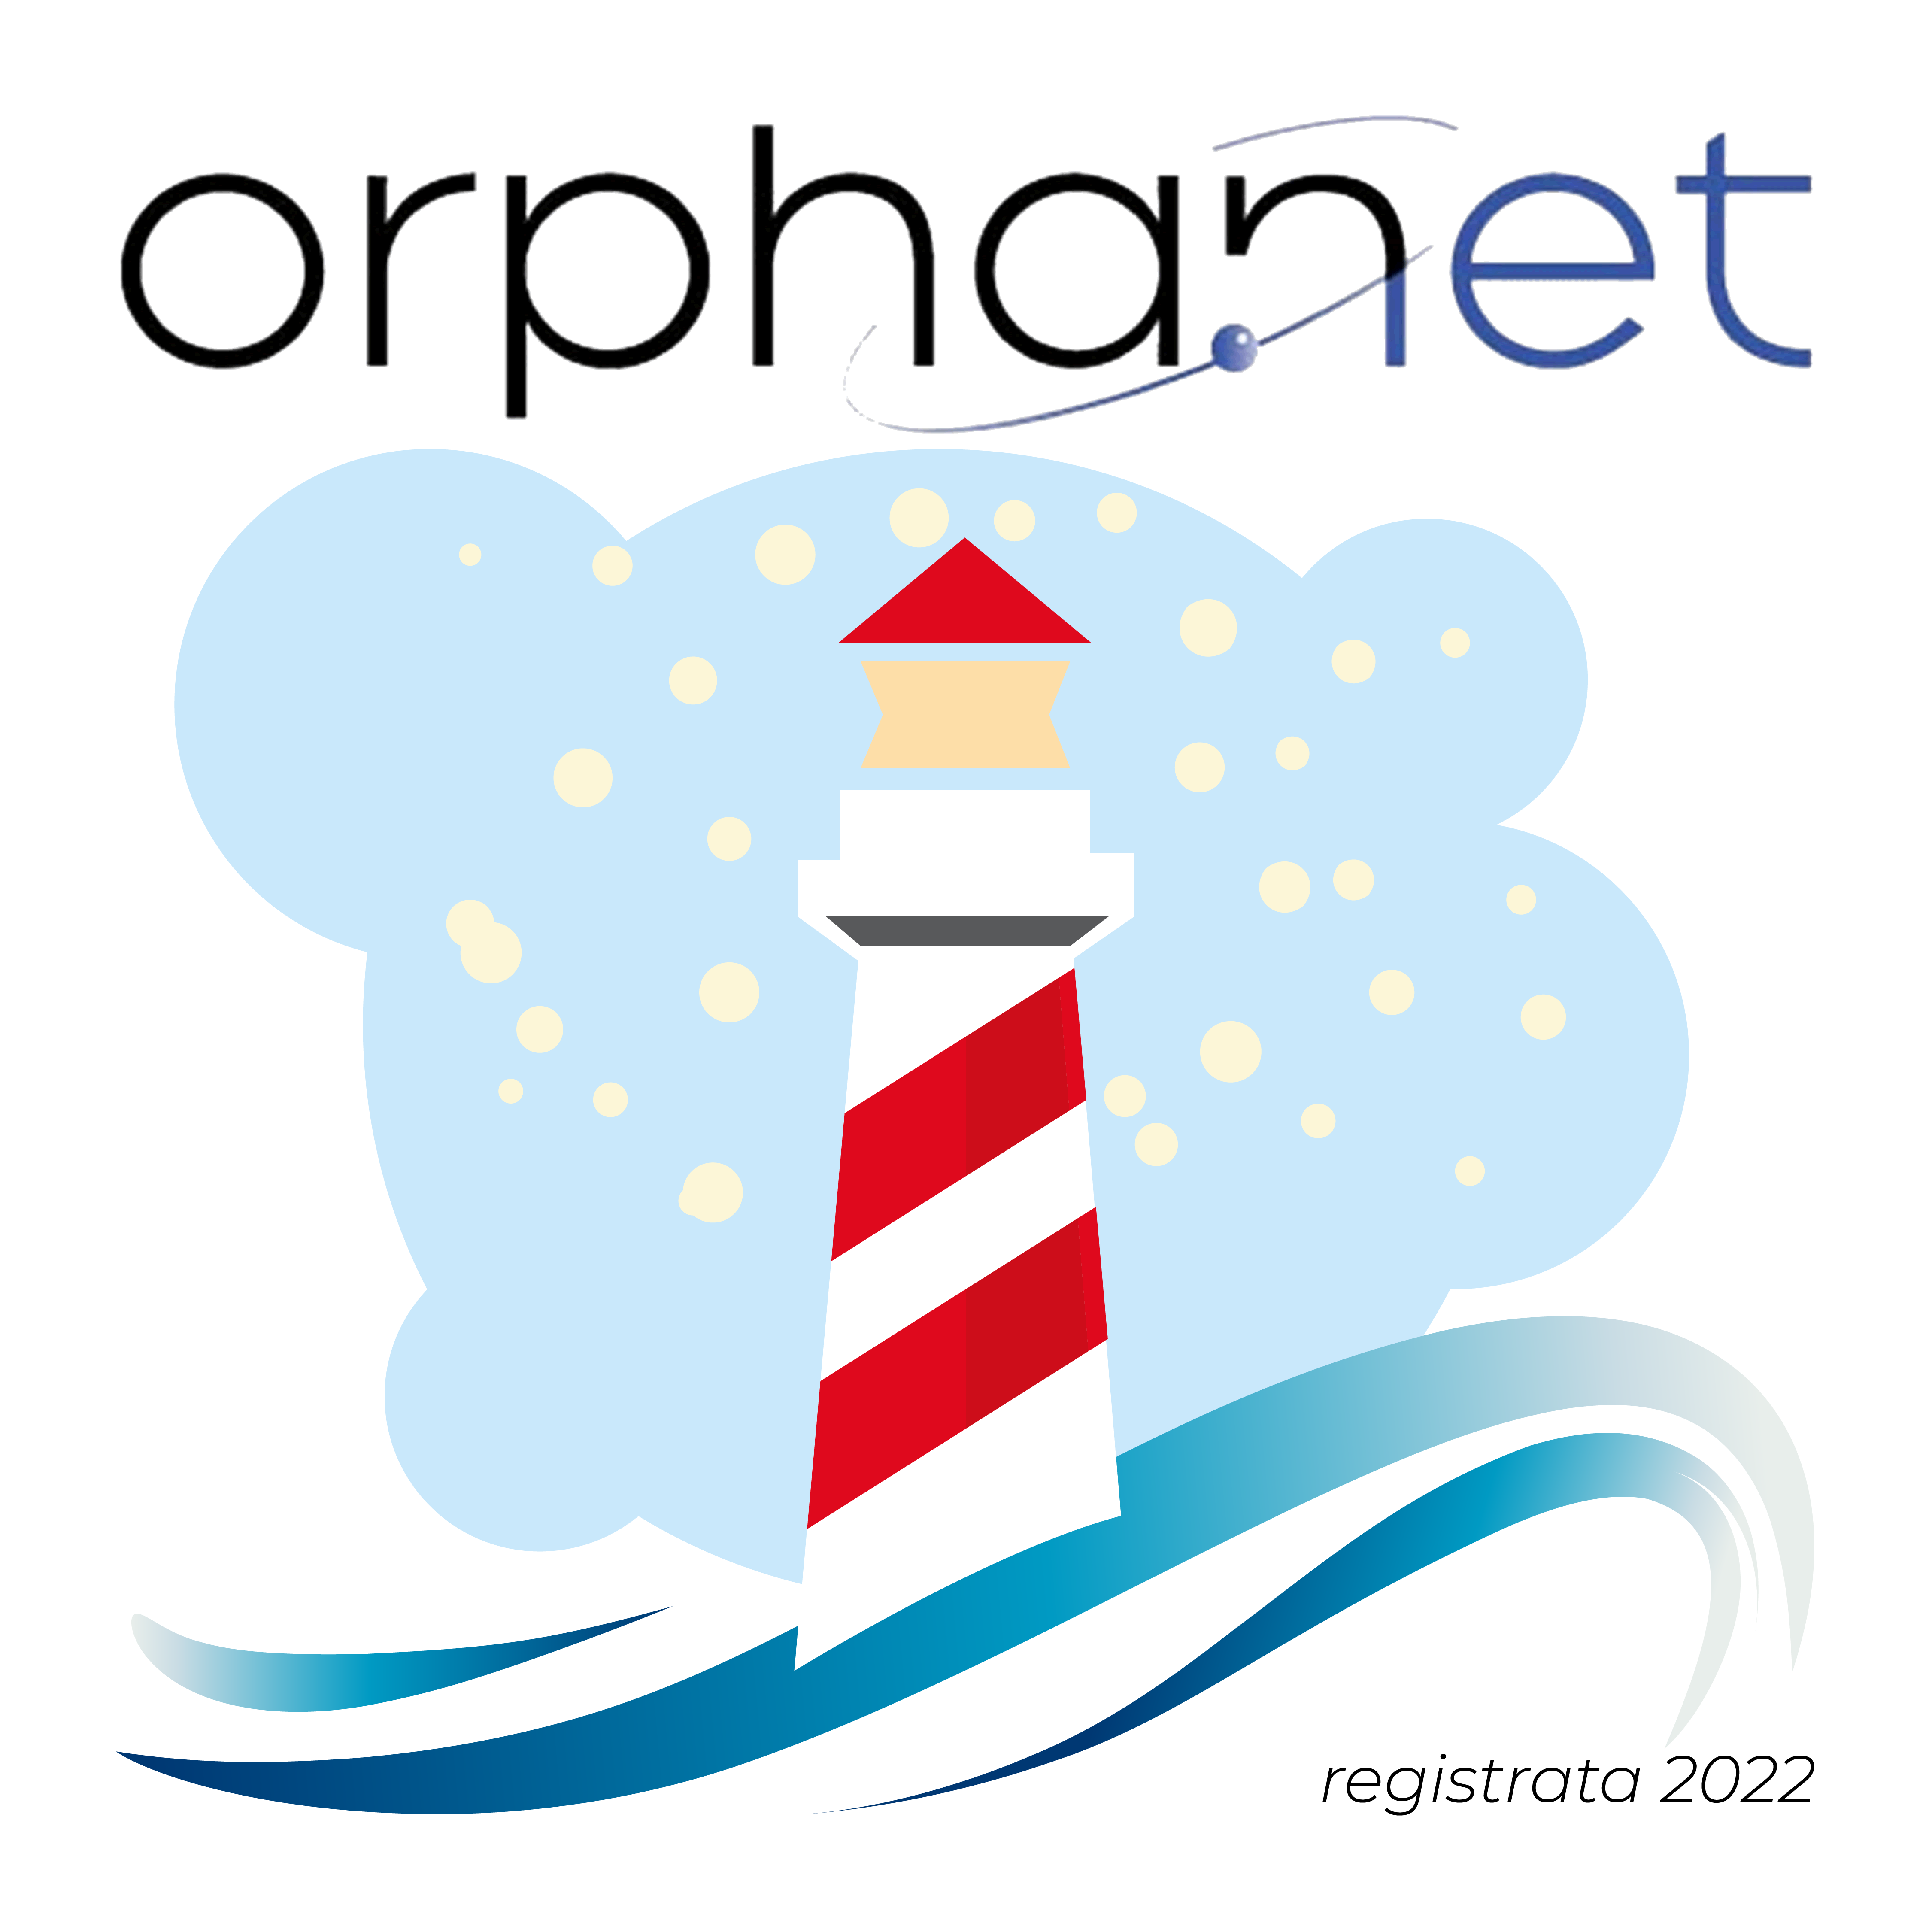 ACMT-Rete collabora con Orpha.net, preziosa risorsa nel campo delle malattie rare